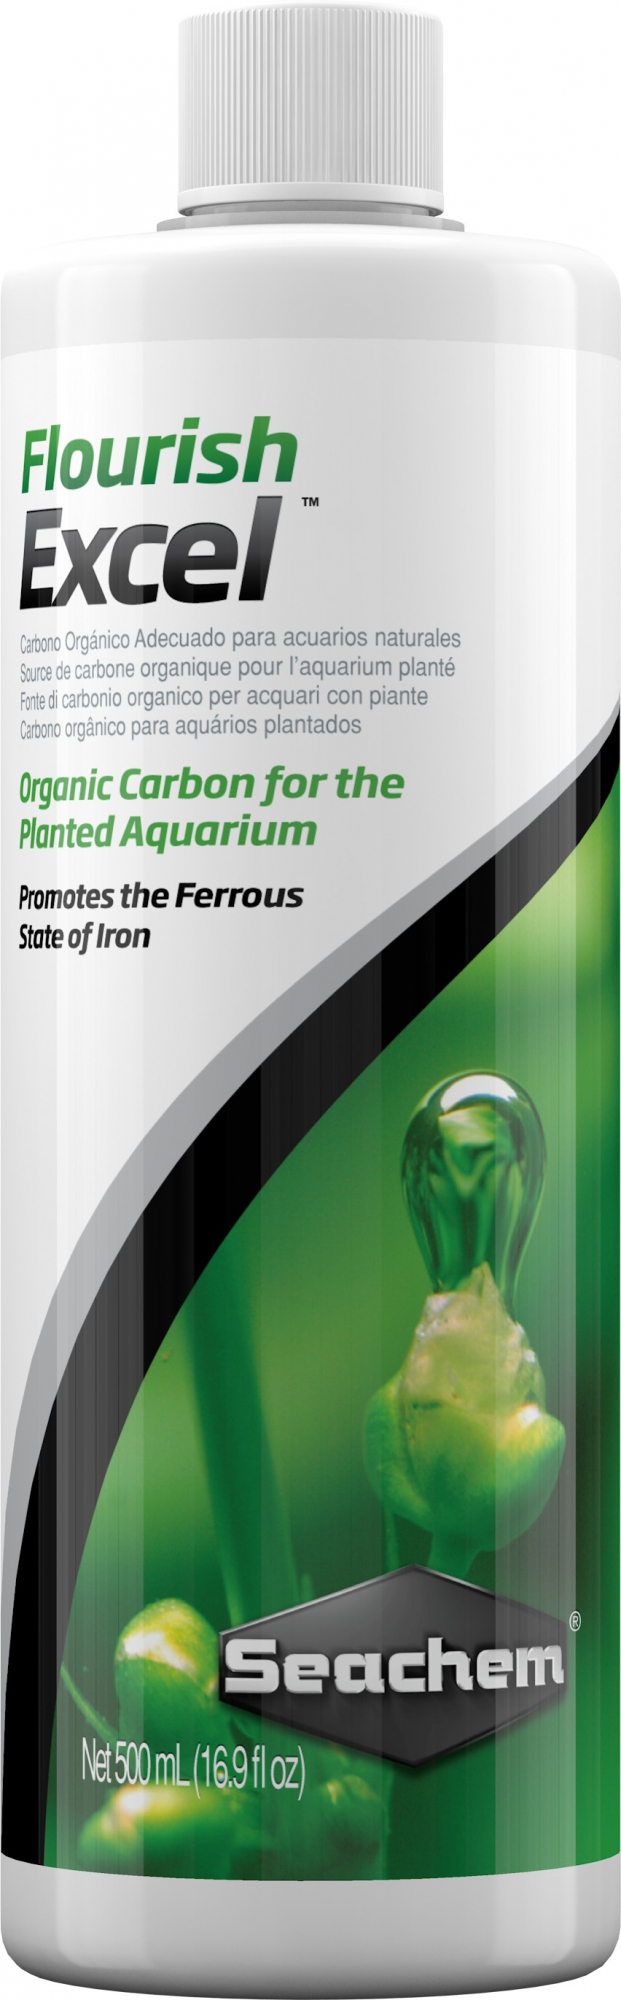 Seachem Flourish Excel Carbón Fertilizante para plantas de acuario